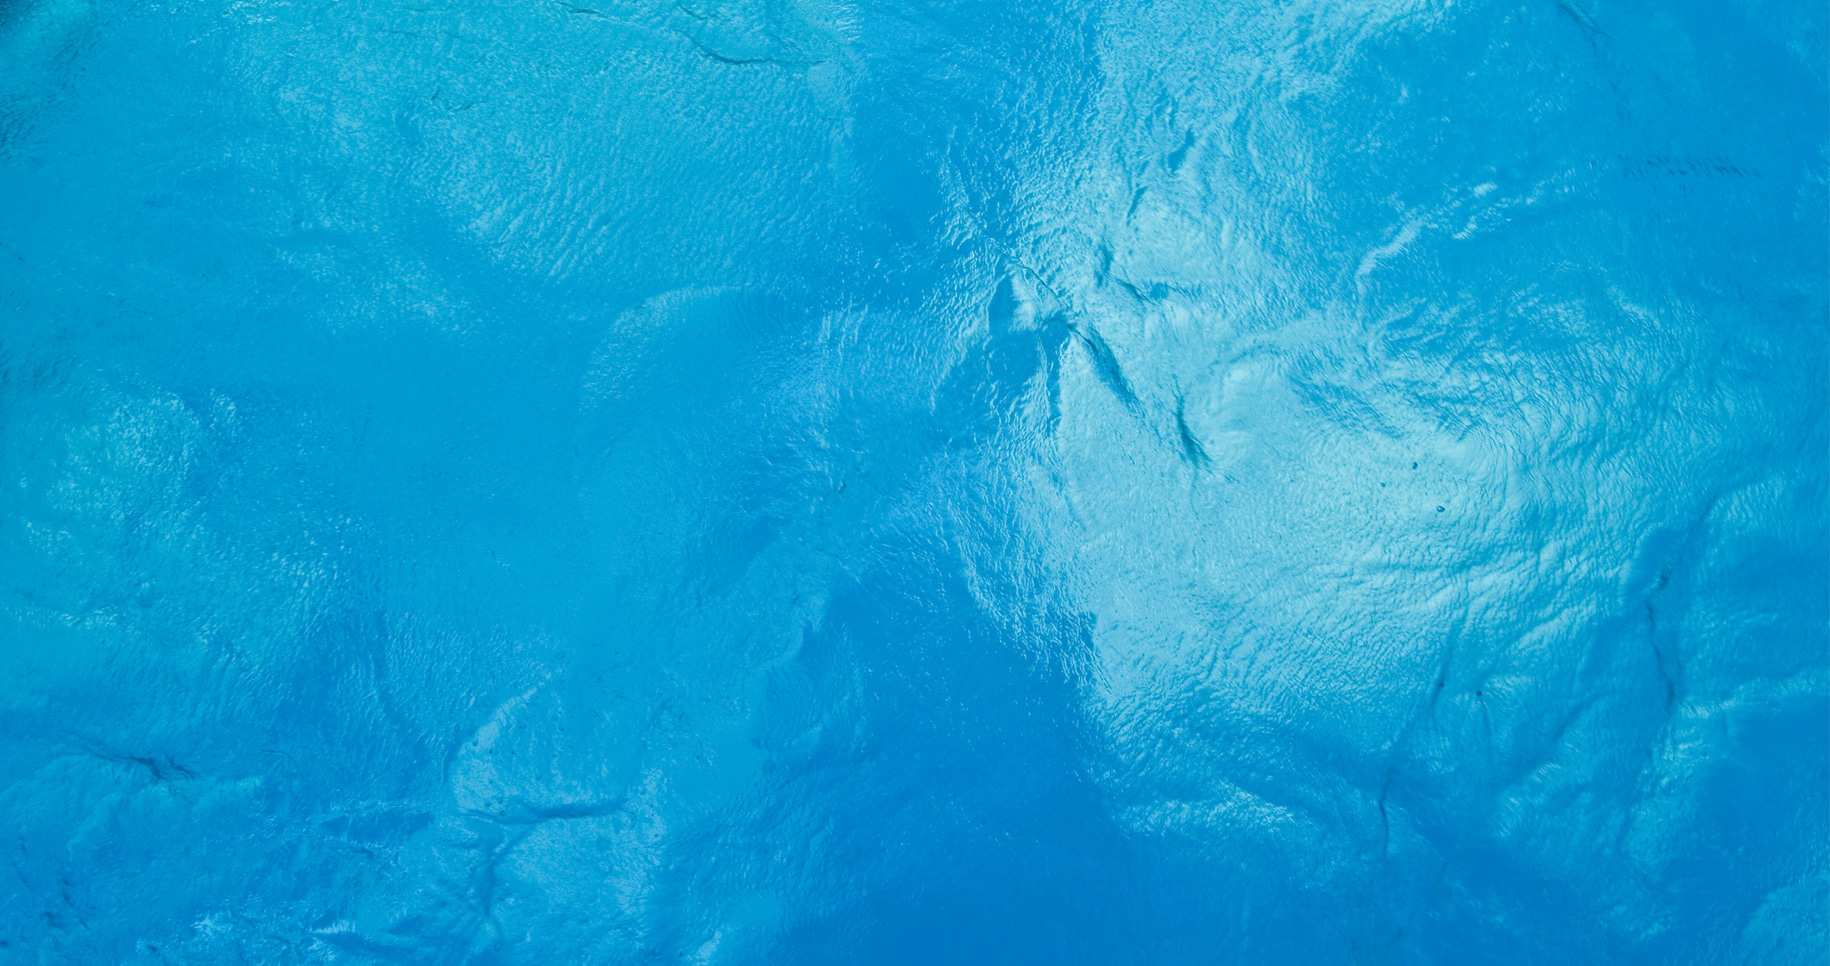 Widok z góry na błękitną tafle wody, z nieznacznymi ruchami wód